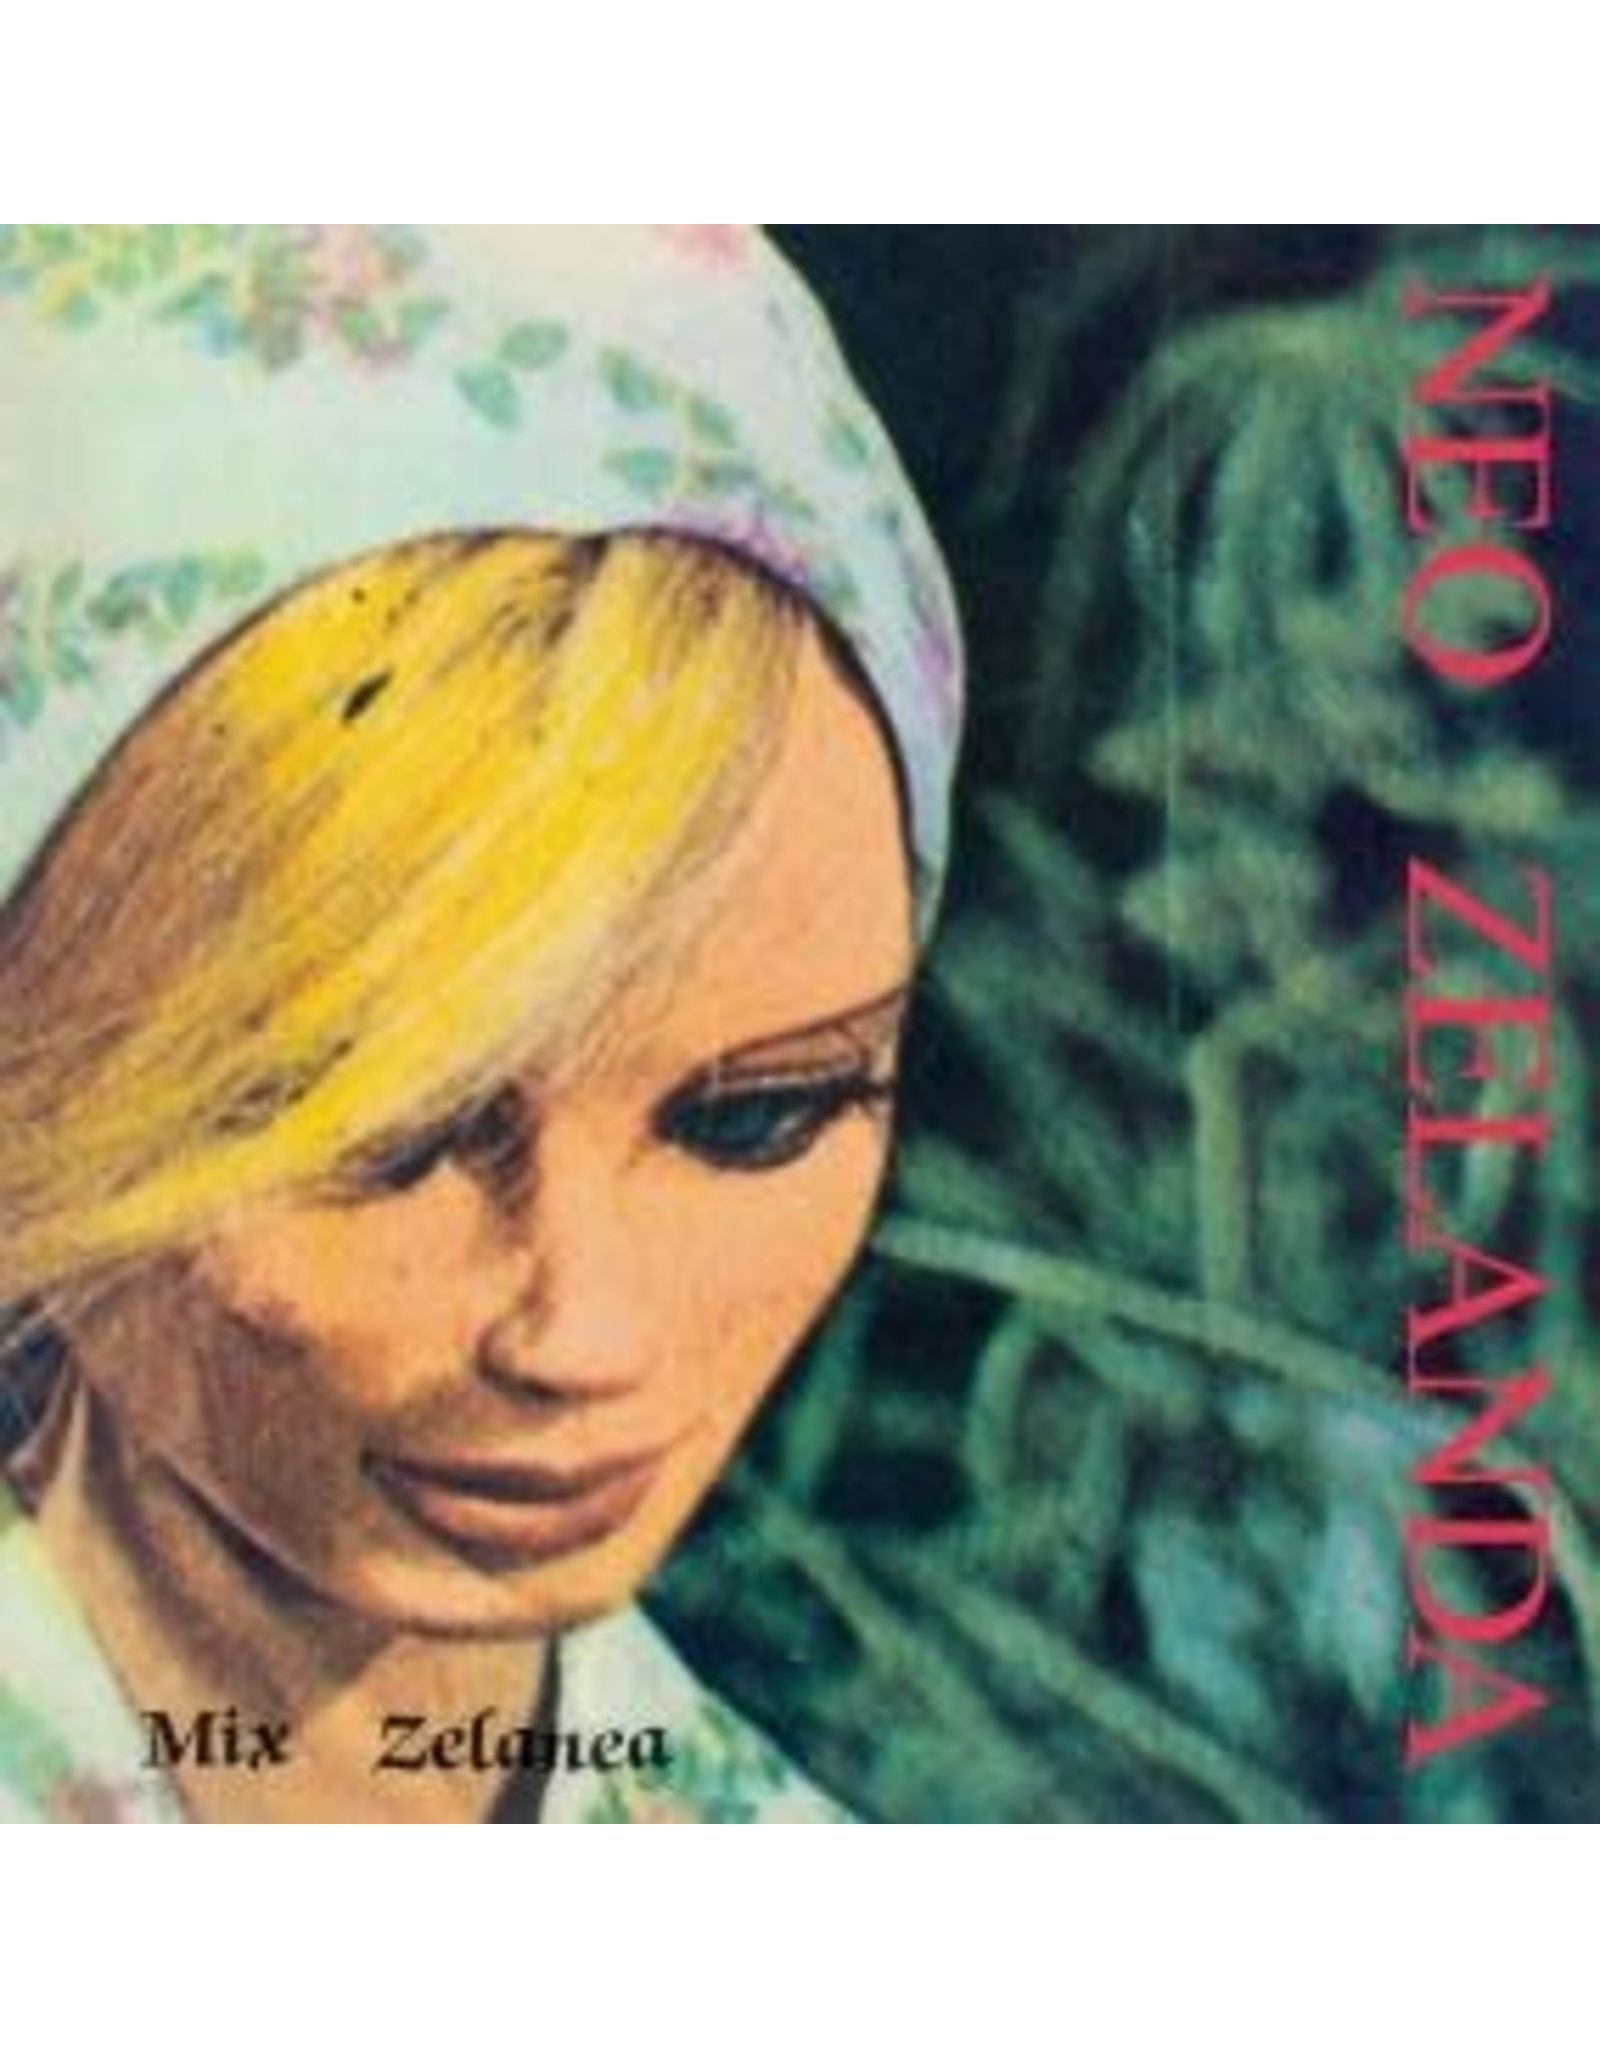 Munster Zelanda, Neo: Mix Zelanea LP